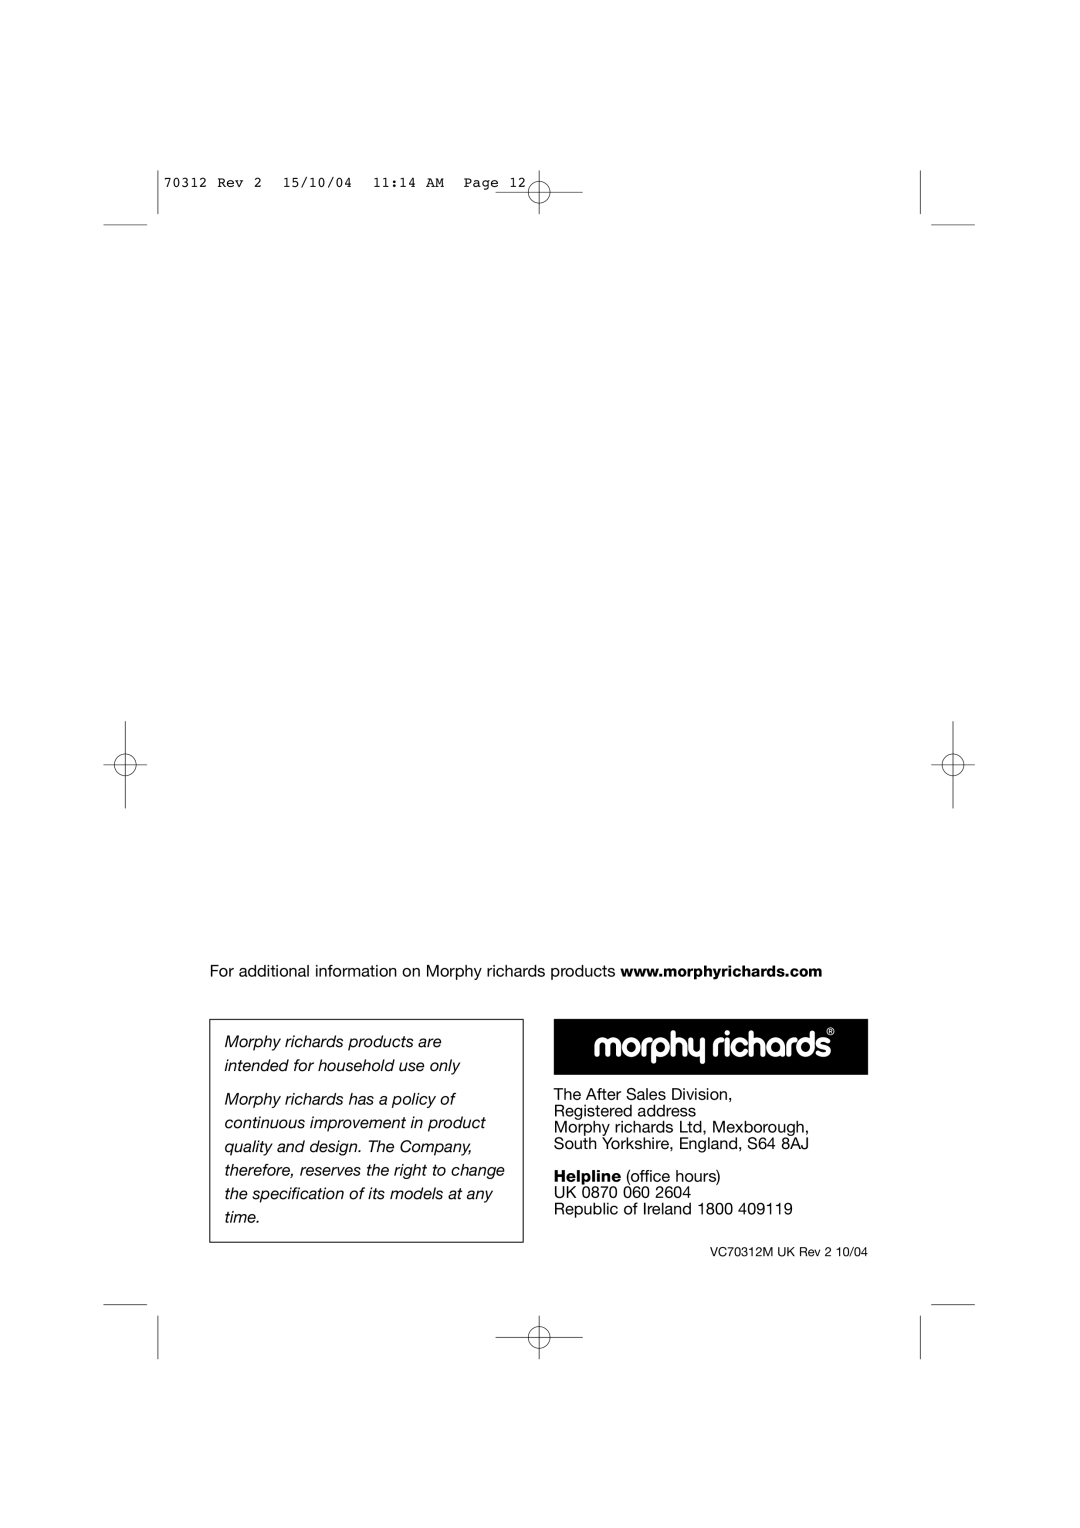 Morphy Richards Storm hard floor cylinder vacuum cleaner manual The After Sales Division, Registered address 